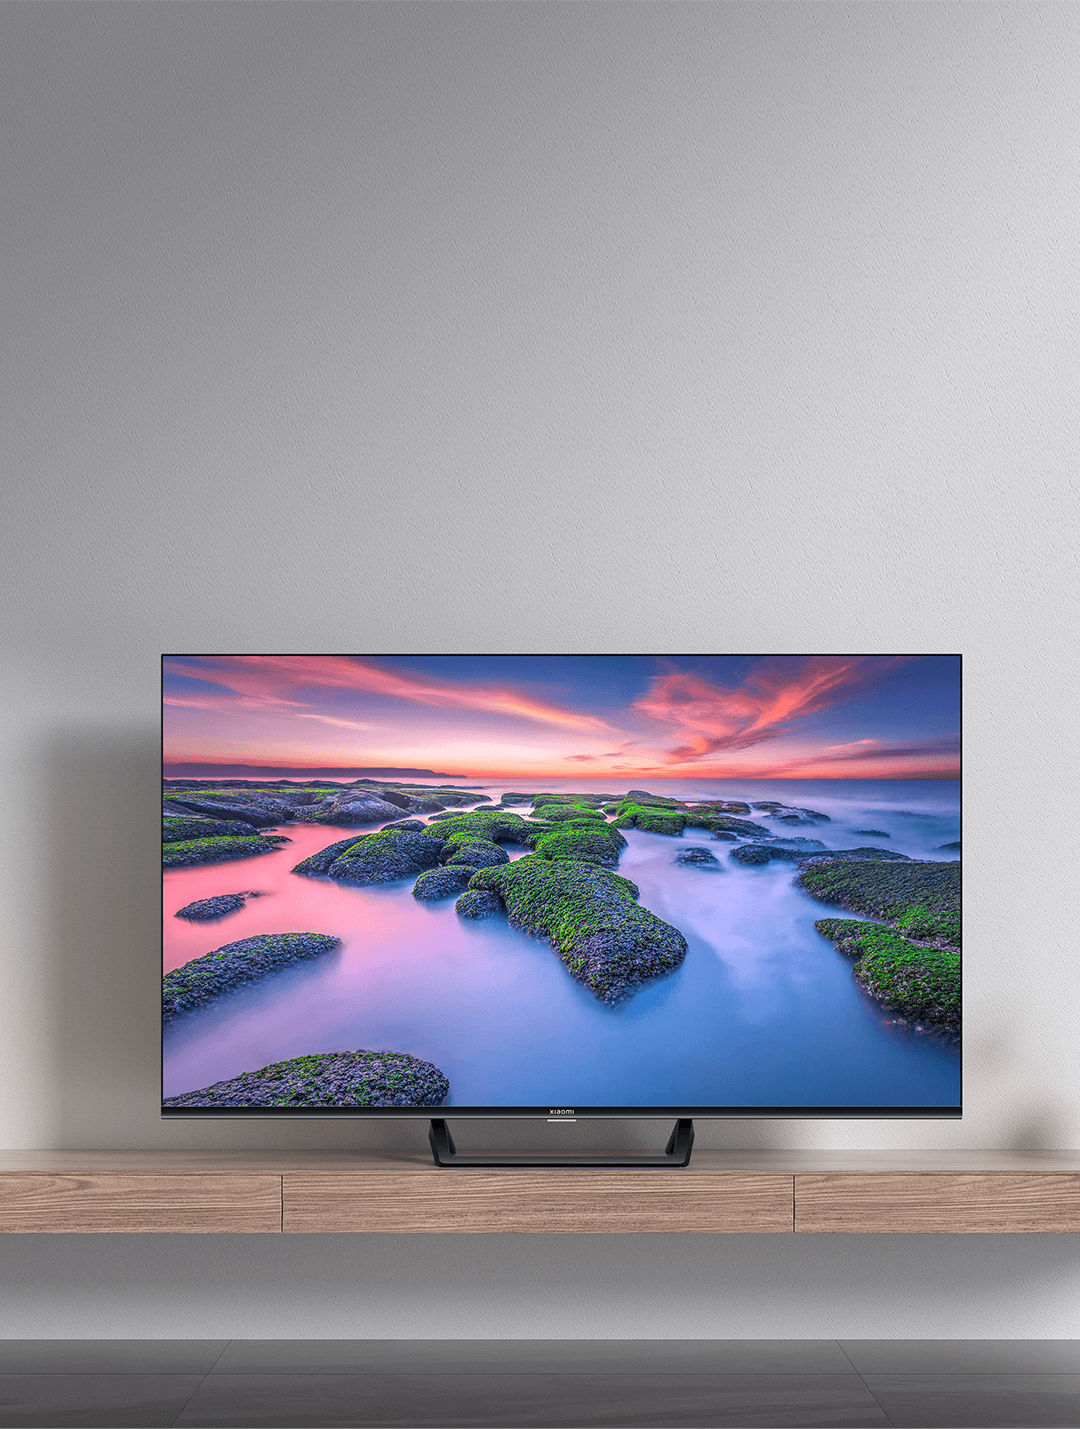 Xiaomi ahora tiene televisores de diseño premium a un precio muy barato